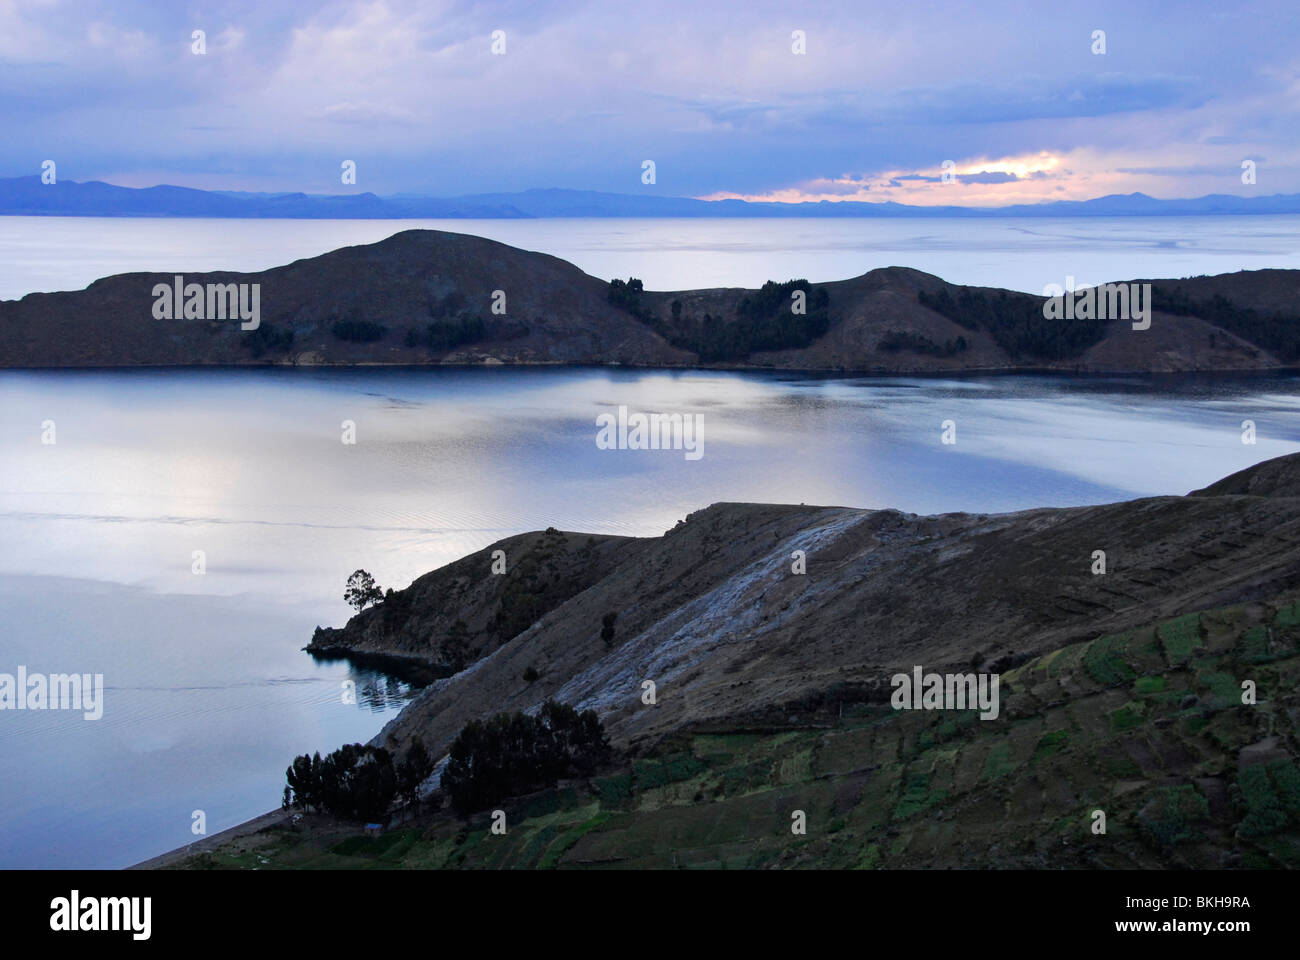 Night view of a bay, Isla del Sol, Lake Titicaca, Bolivia, South America Stock Photo